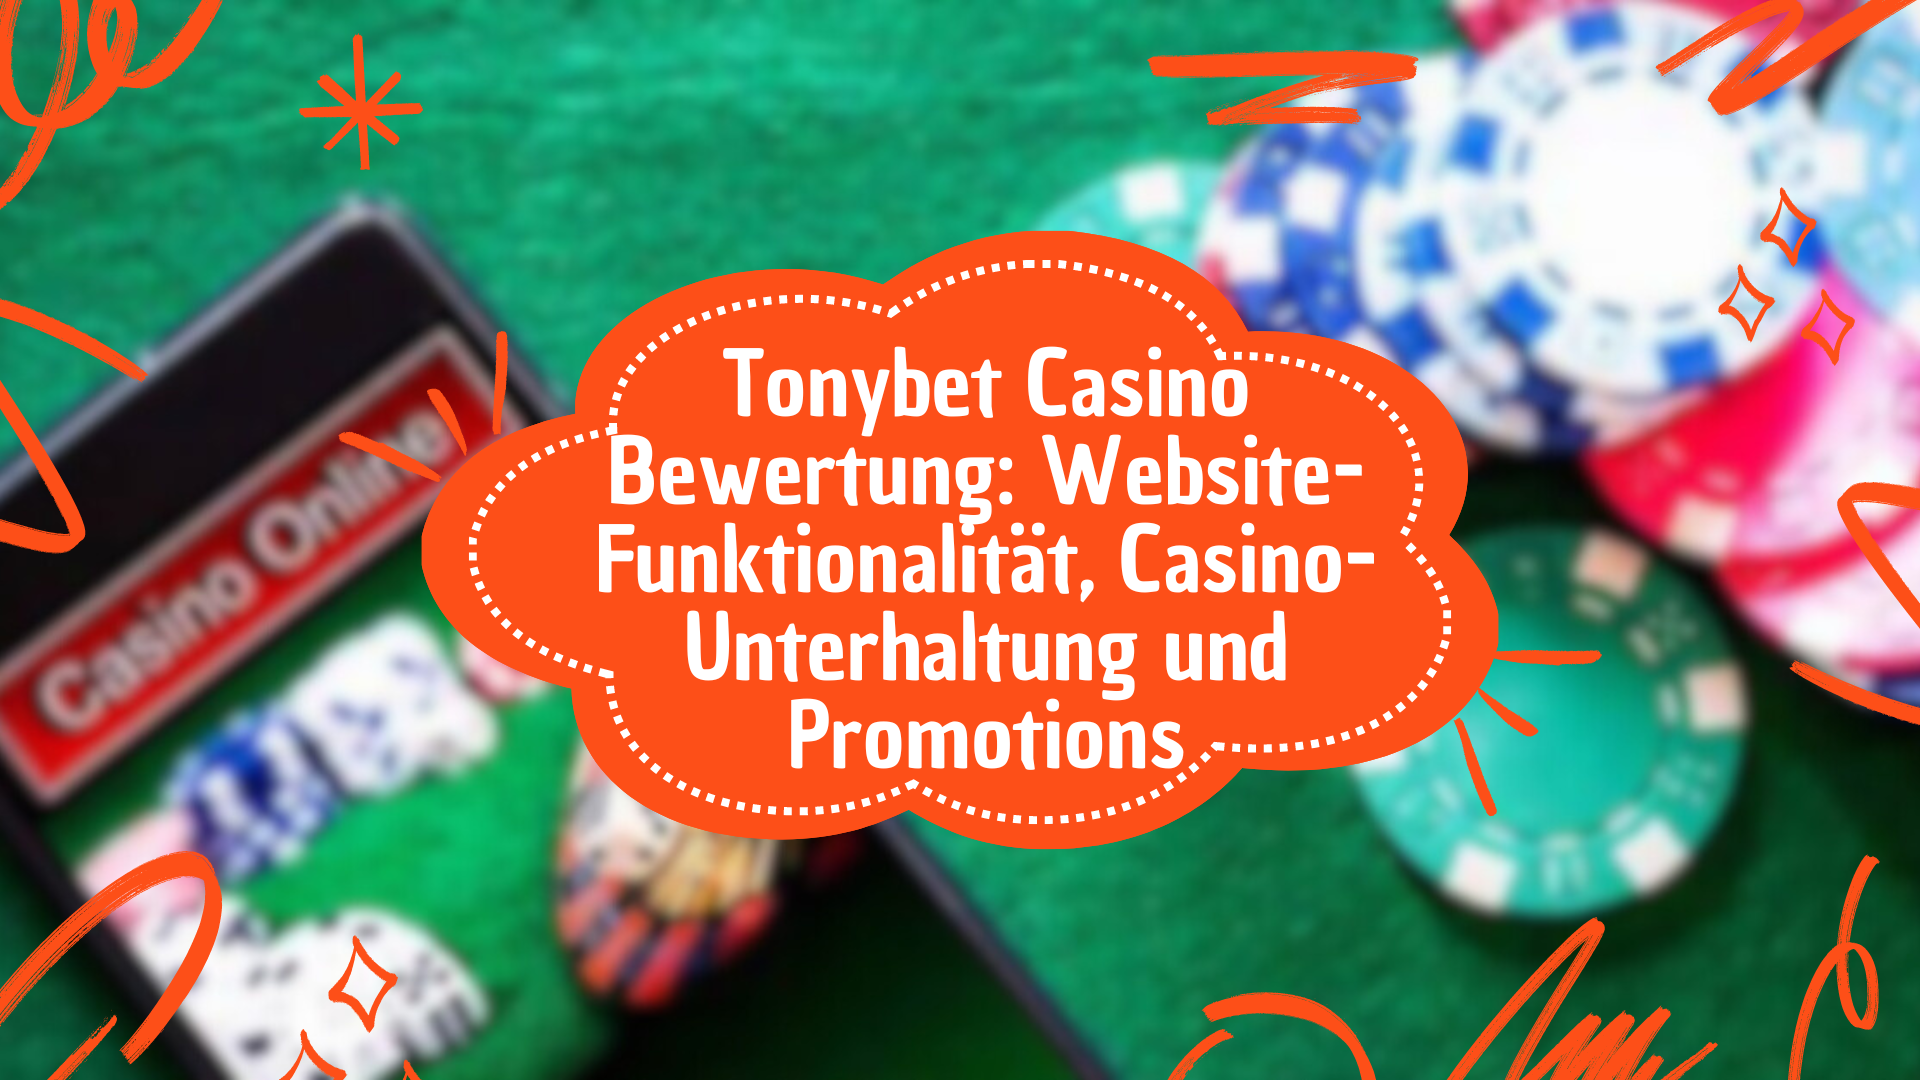 Tonybet Casino Bewertung: Website-Funktionalität, Casino-Unterhaltung und Promotions